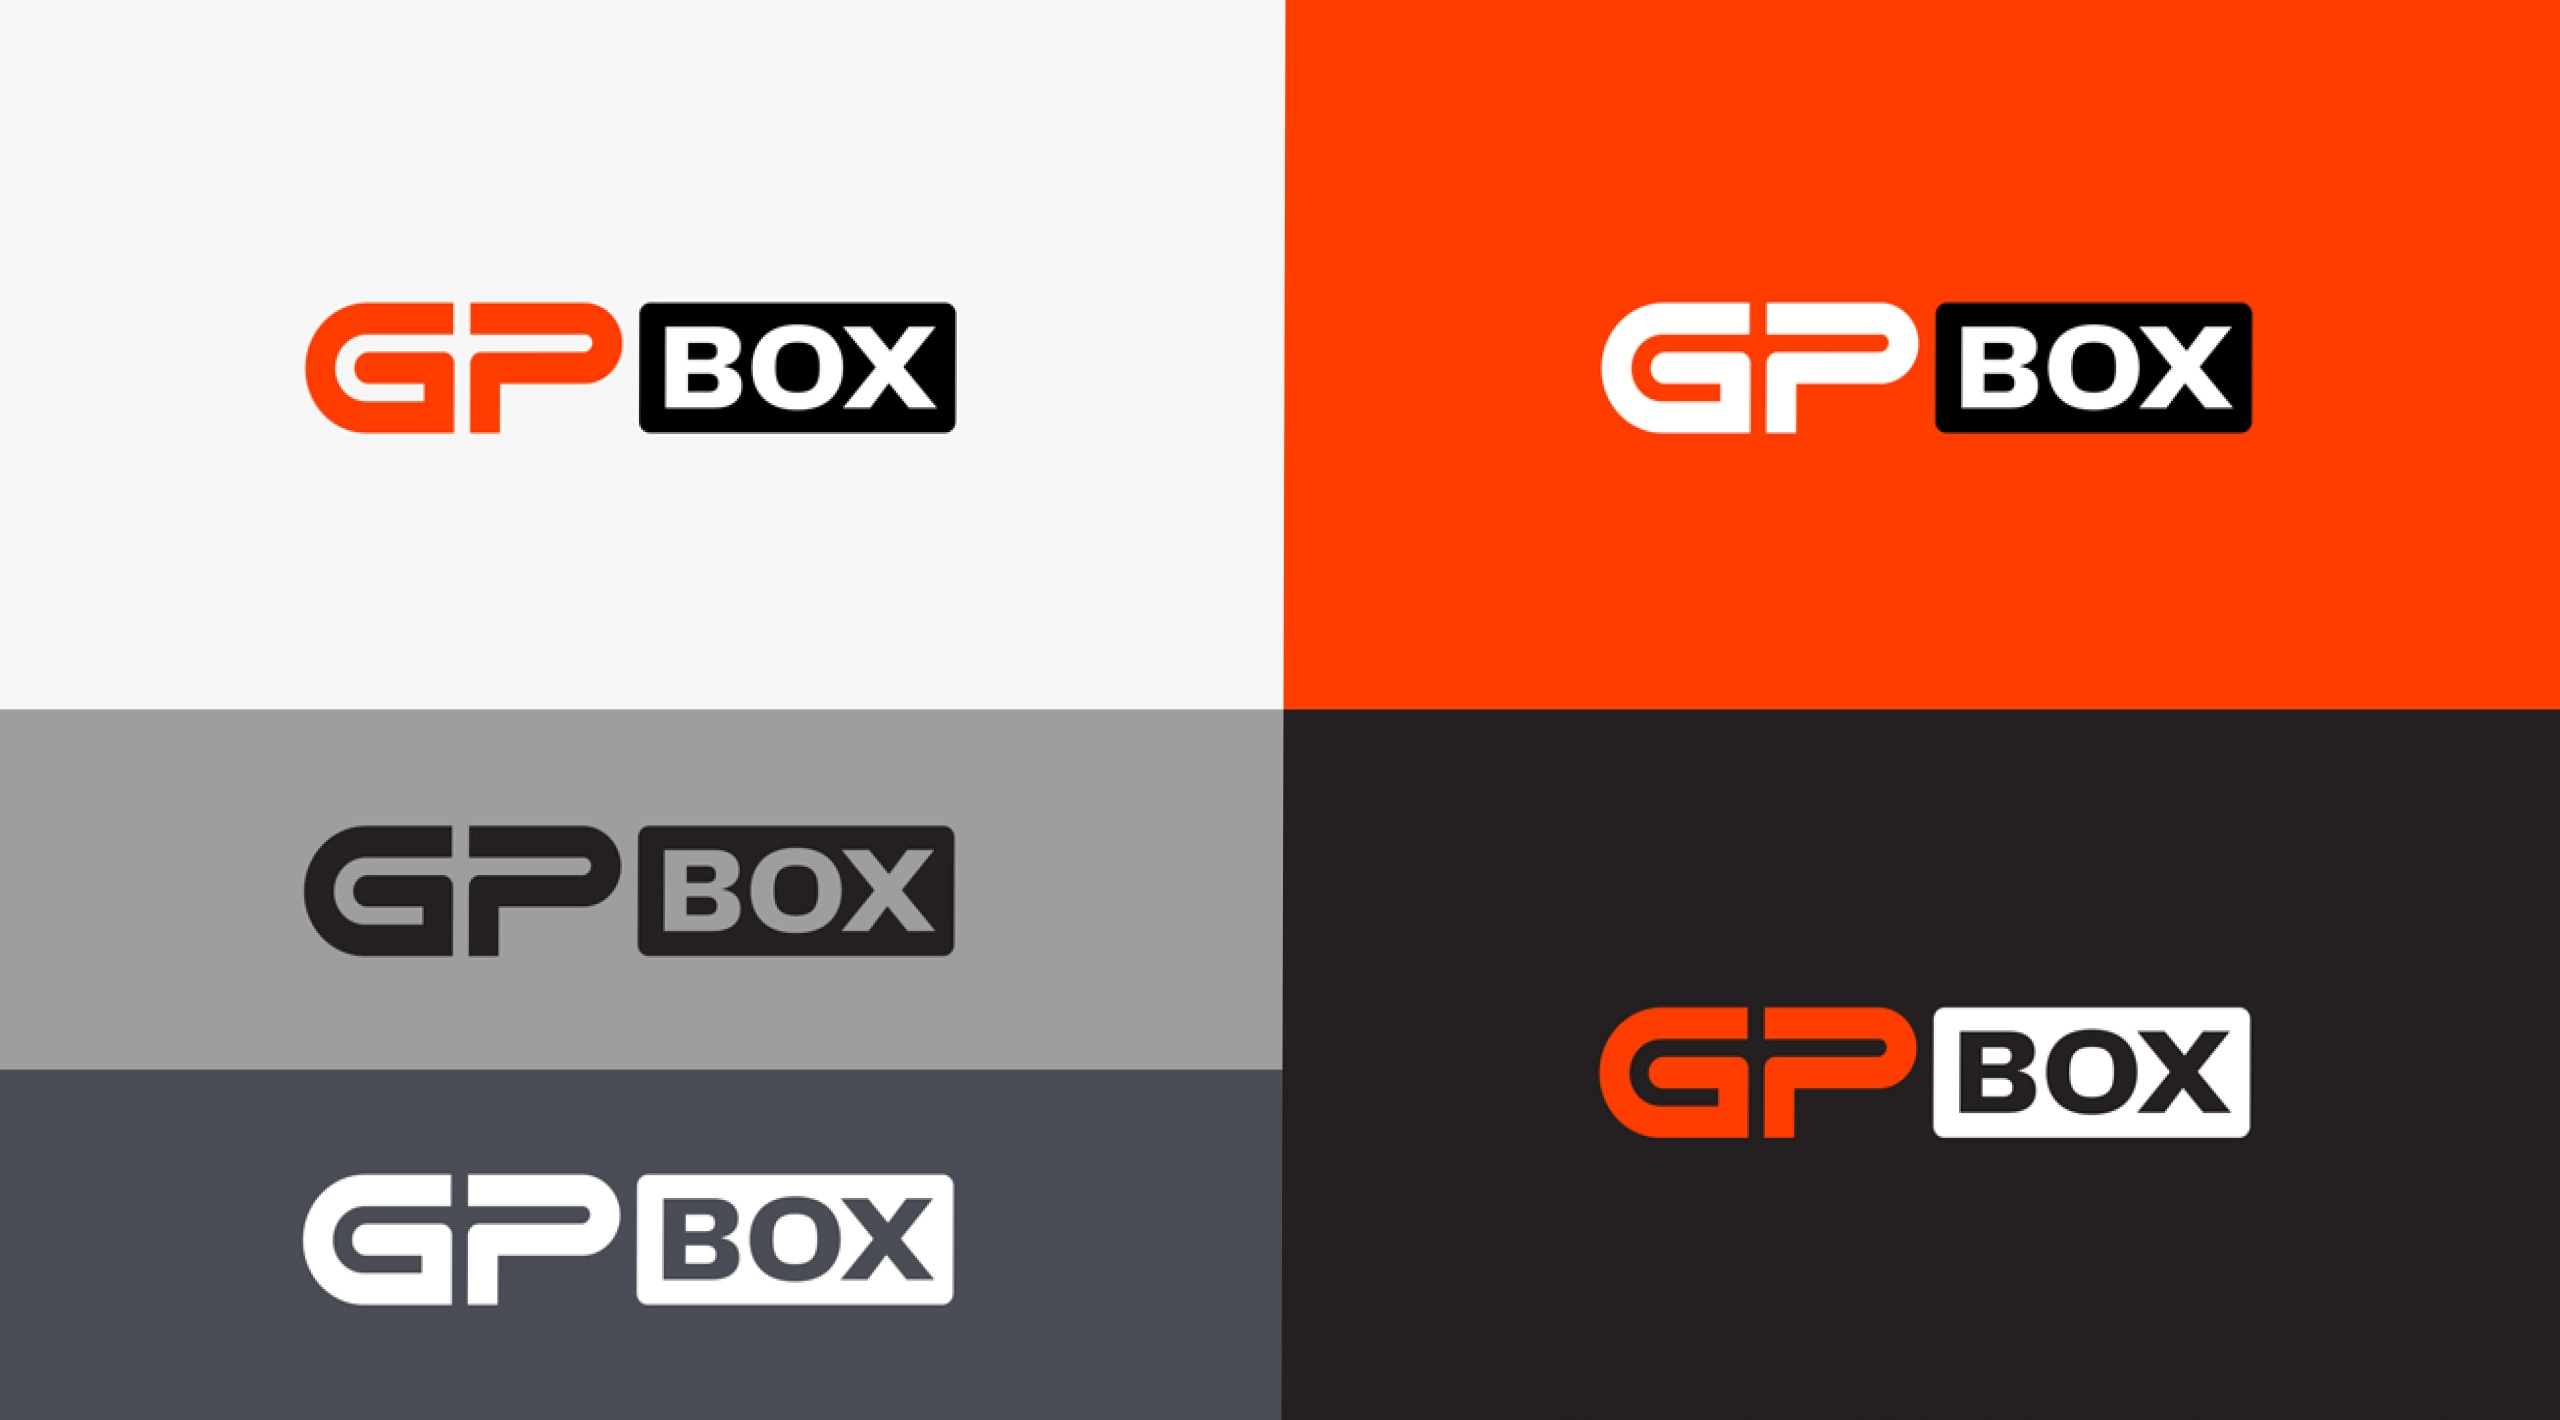 GPBox logos